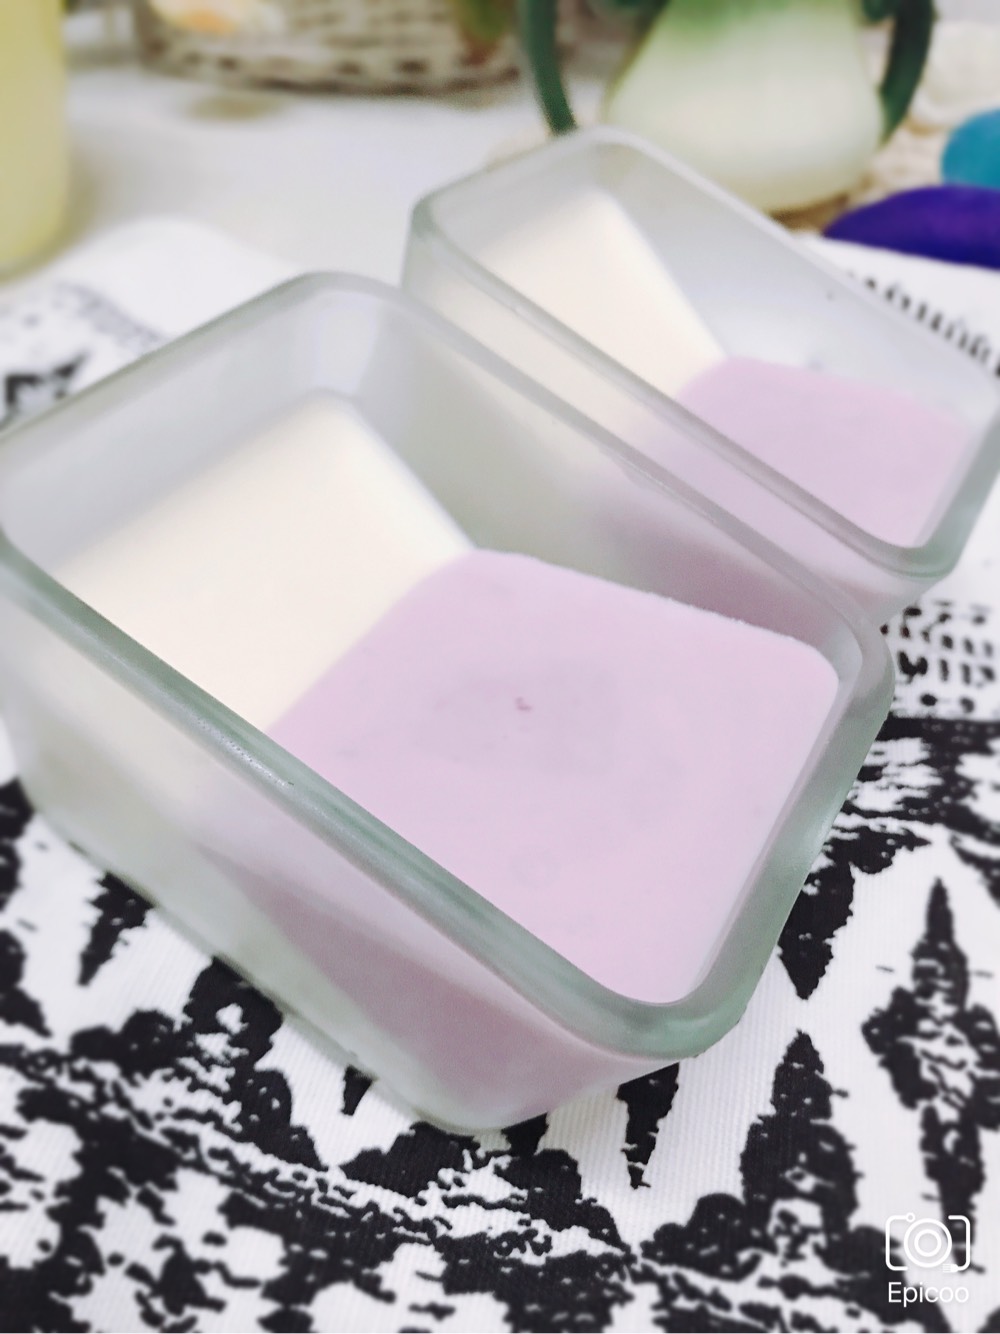 天妈新品——酸奶紫薯布丁&抹茶双拼布丁,加了奶油哦,很美味!